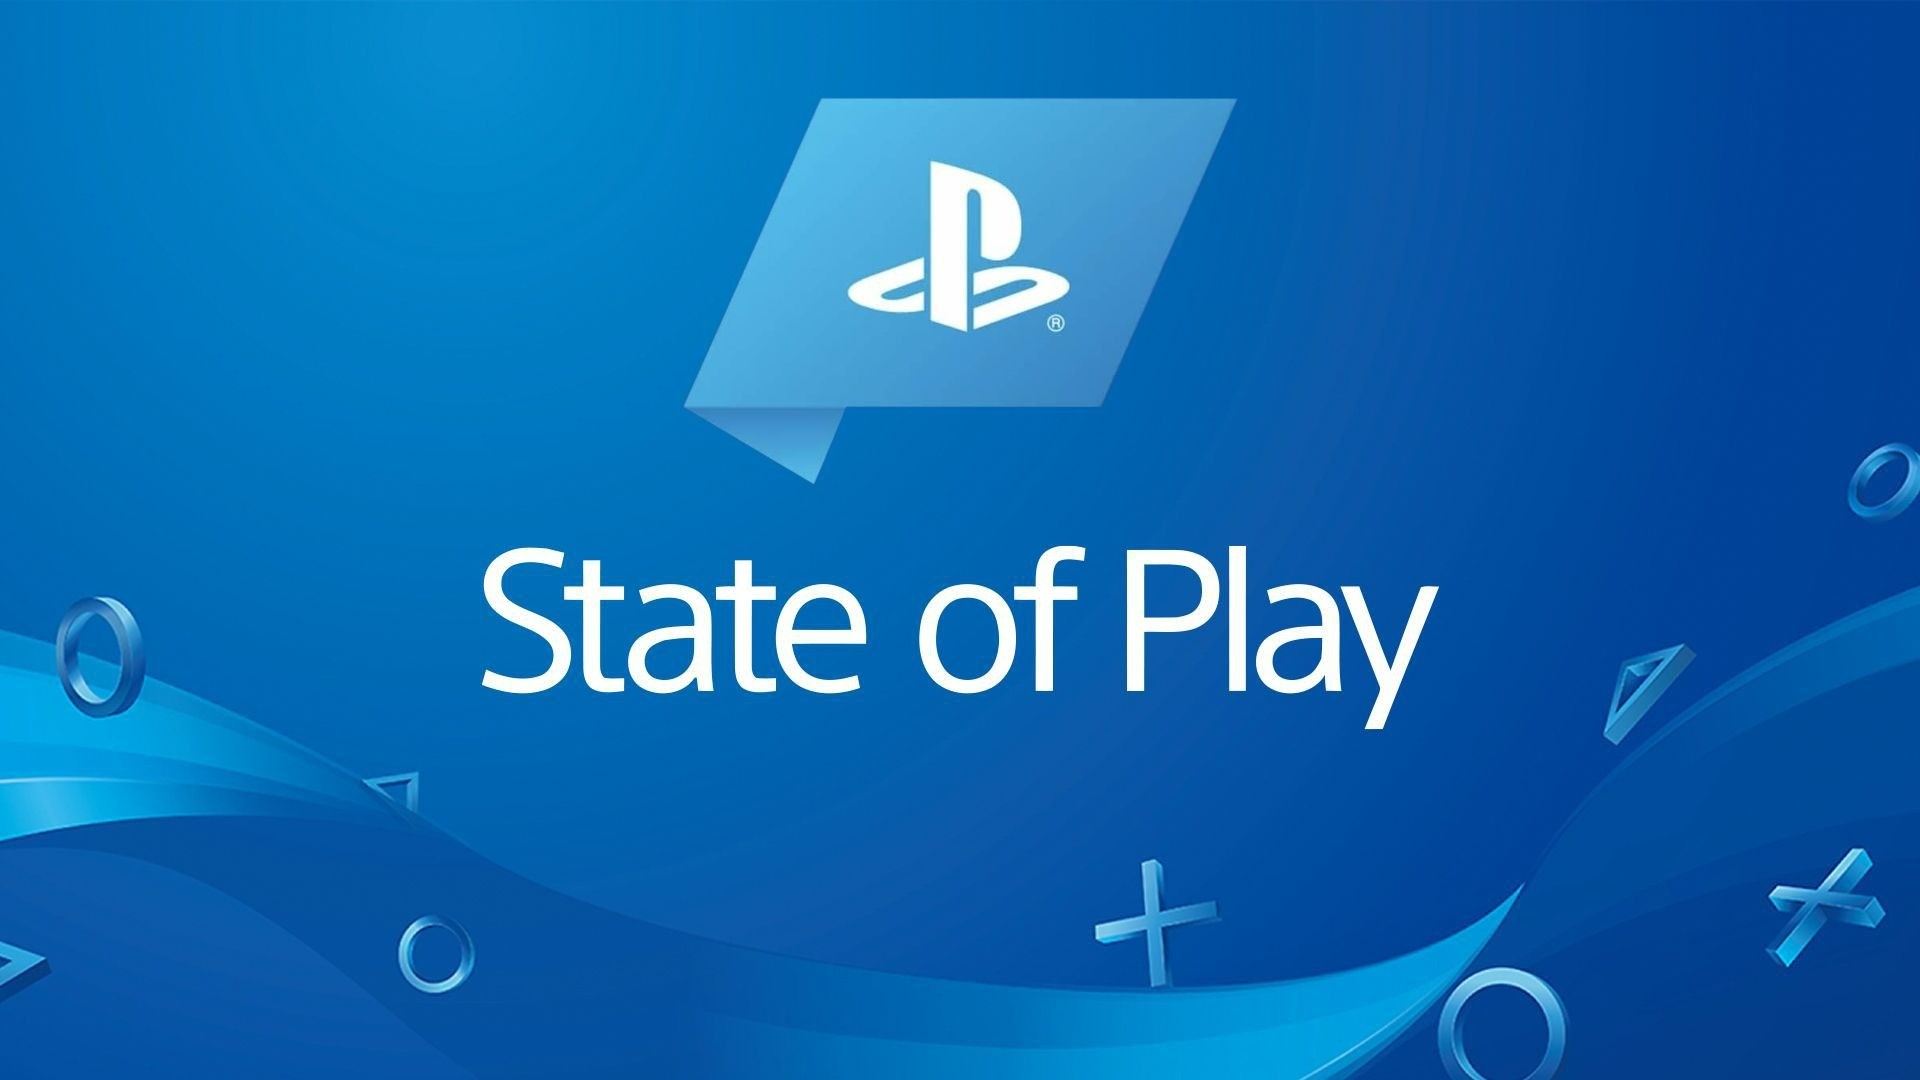 State of Play: Conhece todas as novidades da PlayStation reveladas